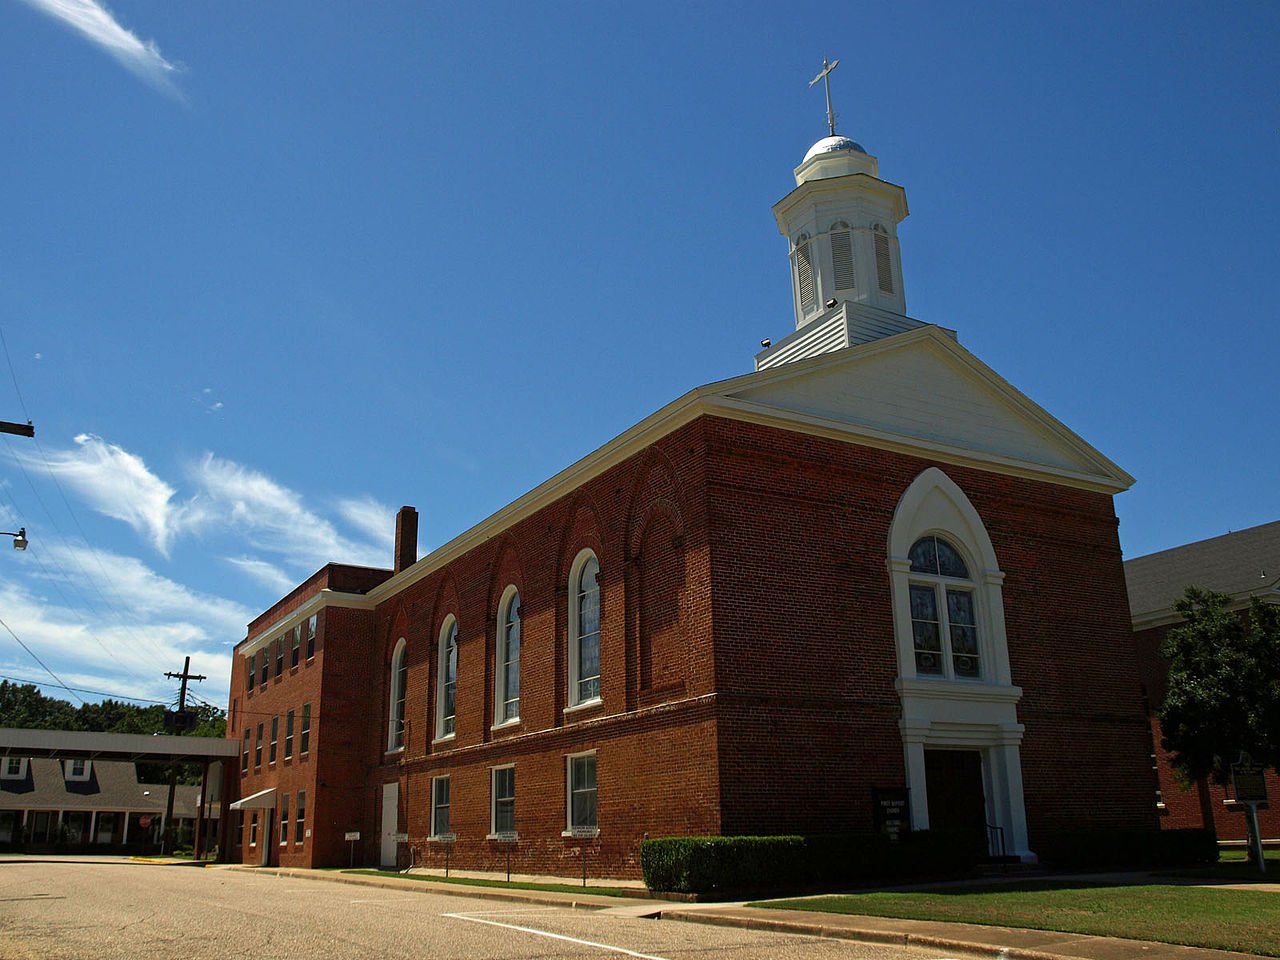 First Baptist Church of Wetumpka